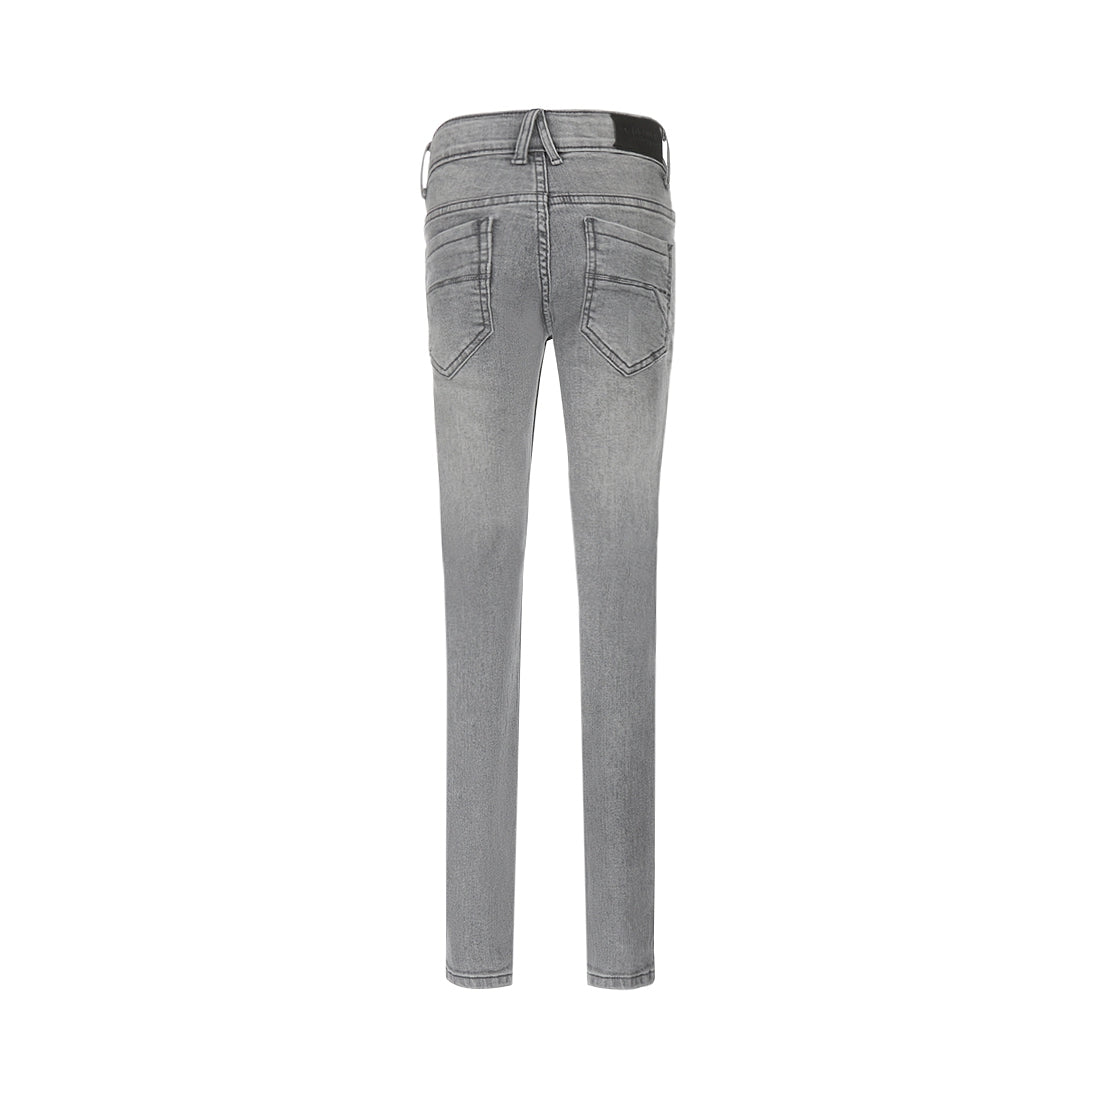 Jongens Jeans Skinny van No Way Monday in de kleur Grey jeans in maat 164.